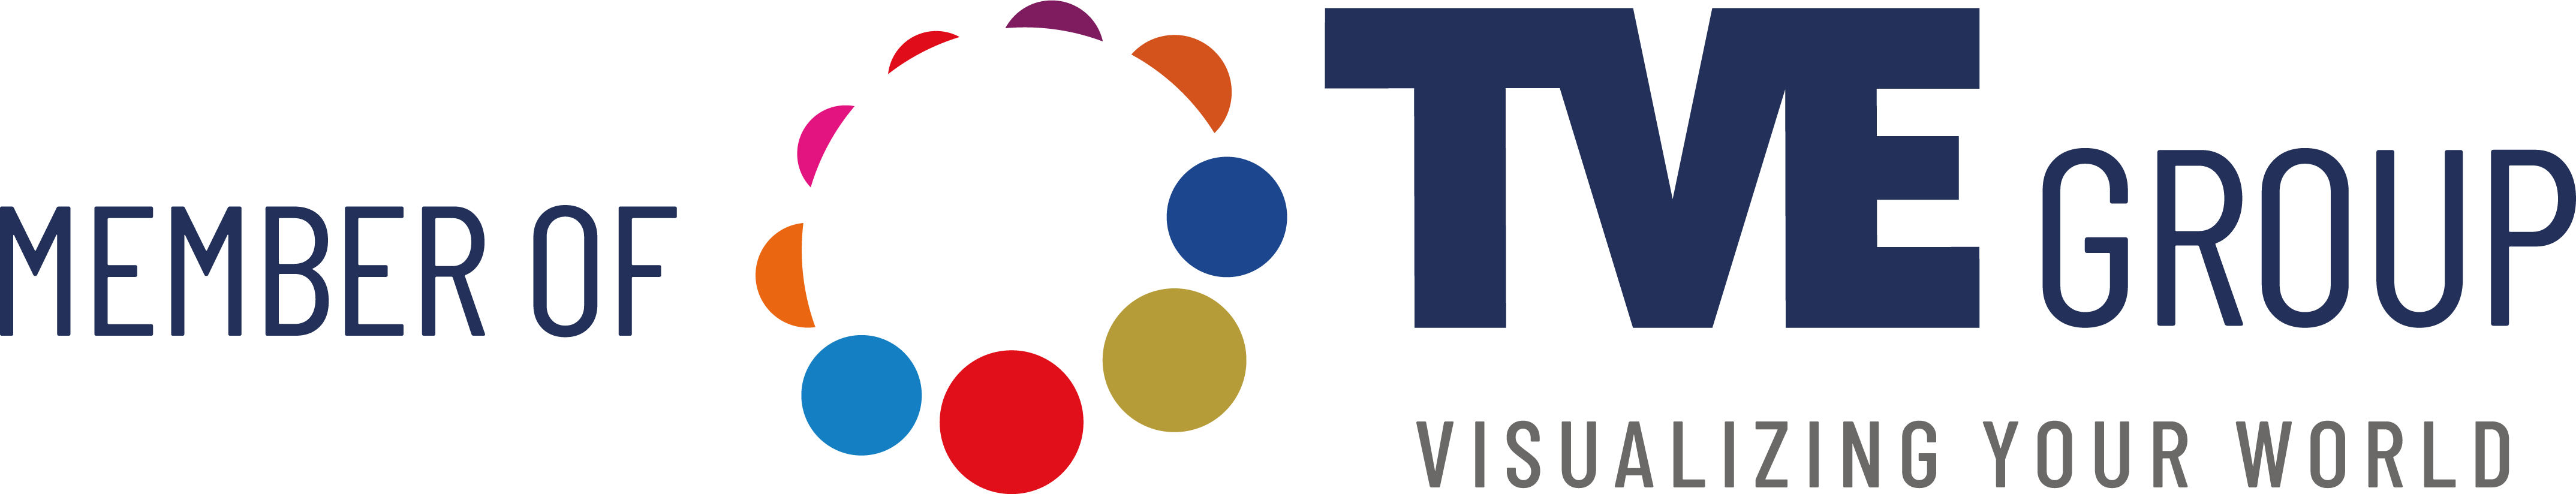 Member of TVE Group logo